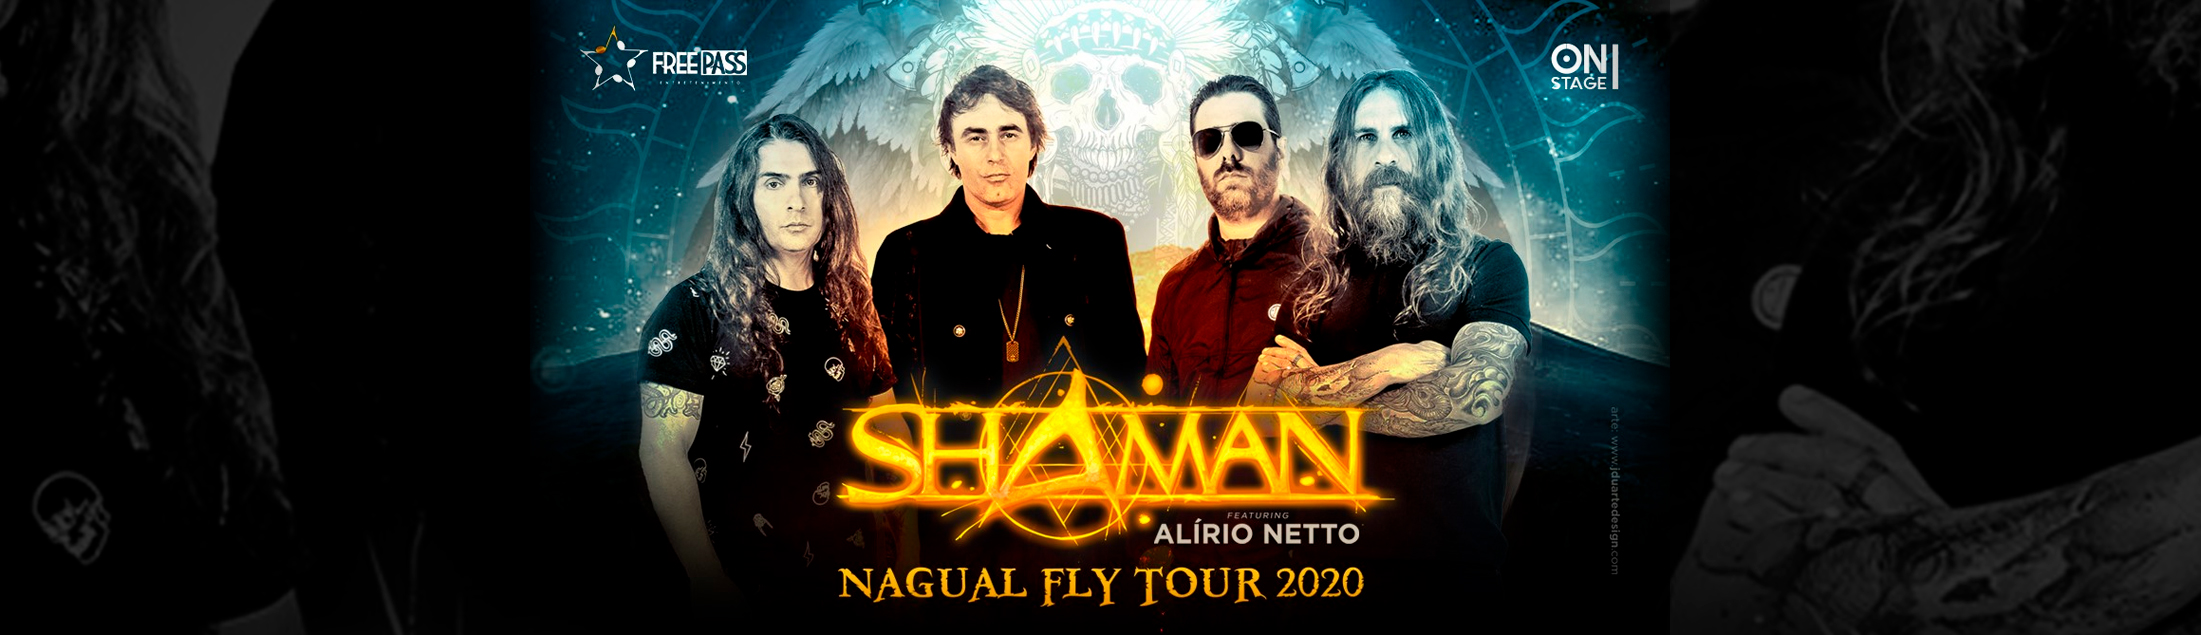 Shaman volta com 'Nagual Fly Tour 2020', dessa vez no Circo Voador